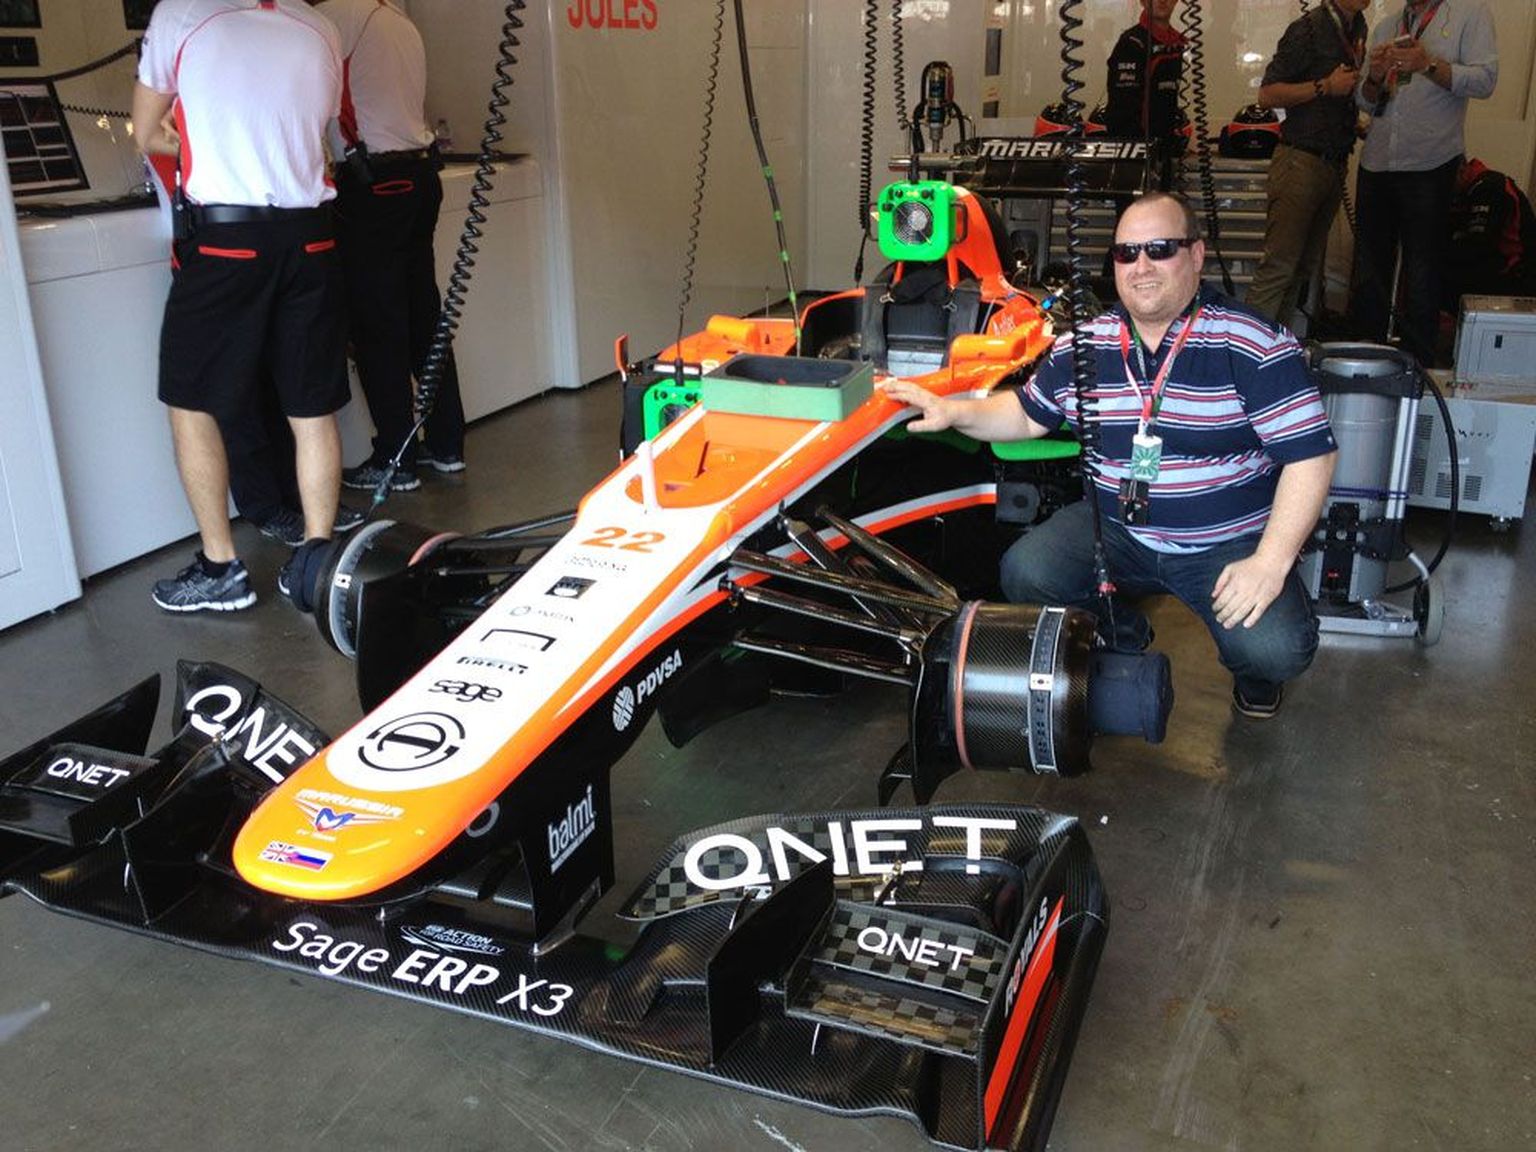 Сетевая компания Qnet спонсирует участницу «Формулы-1» — команду Marussia. На фото Александер Герр позирует рядом со спортивным автомобилем Marussia.